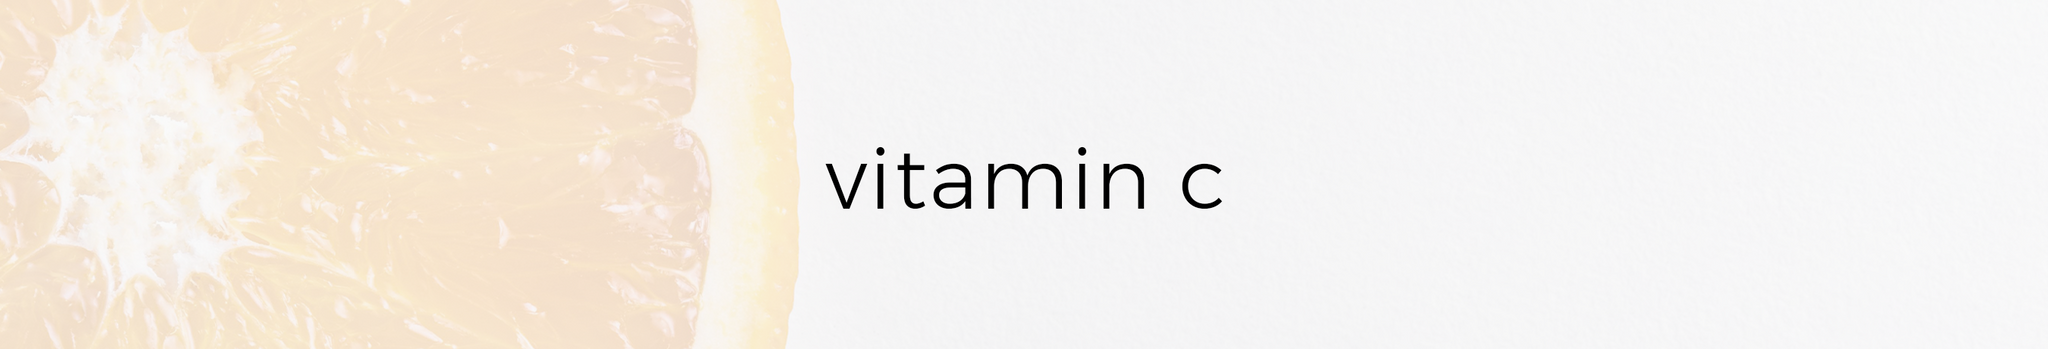 vitamin_c